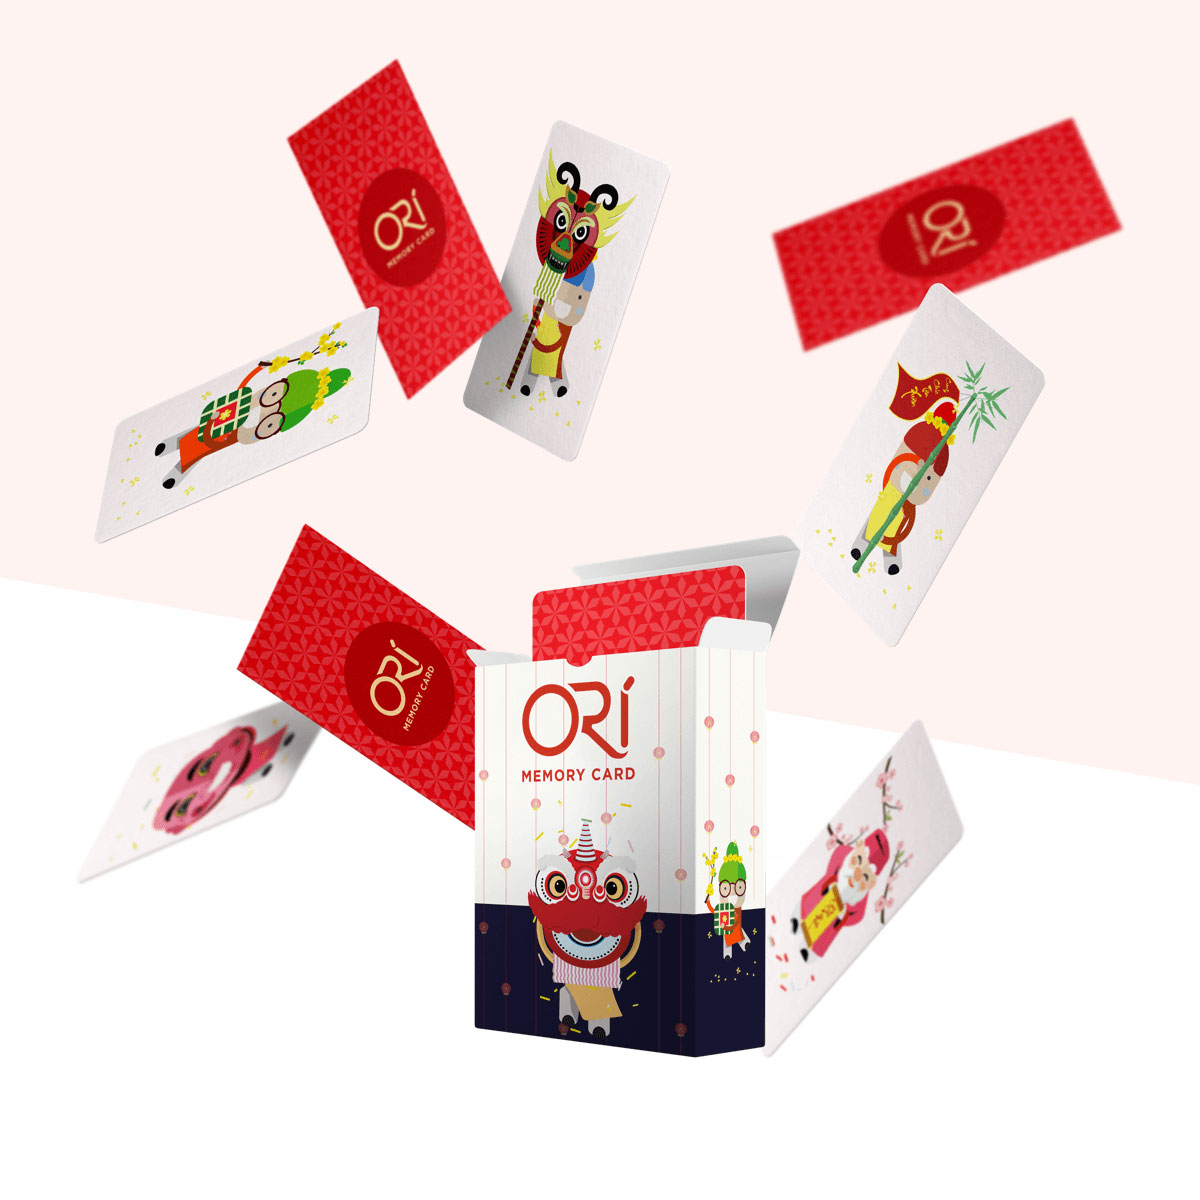 ORI - Memory Card Web Game